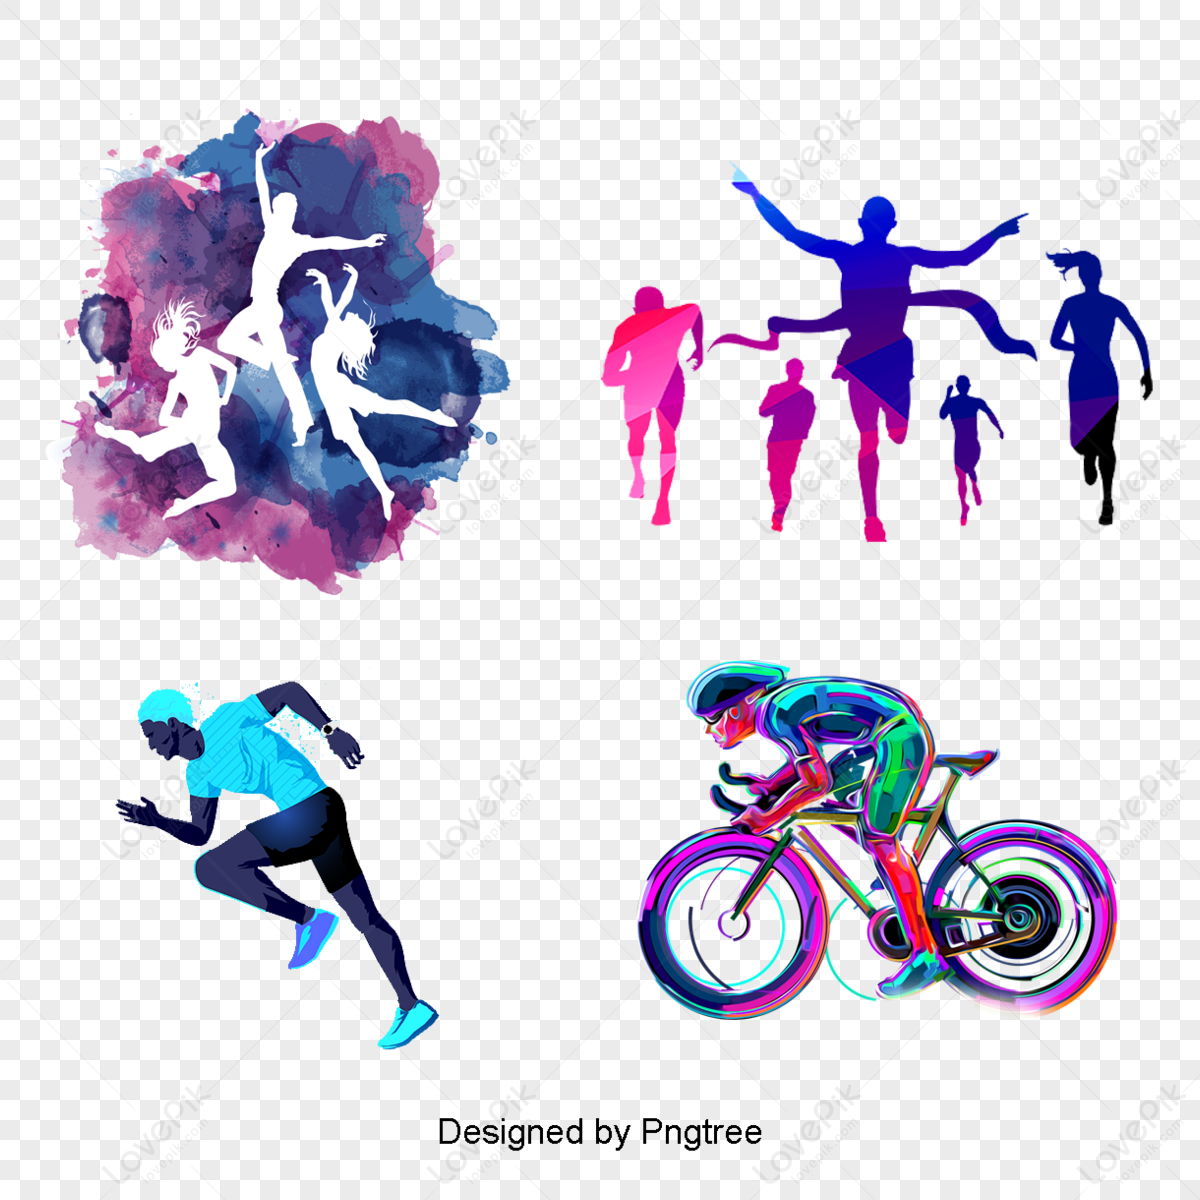 Fitness PNG Imagens com fundo transparente